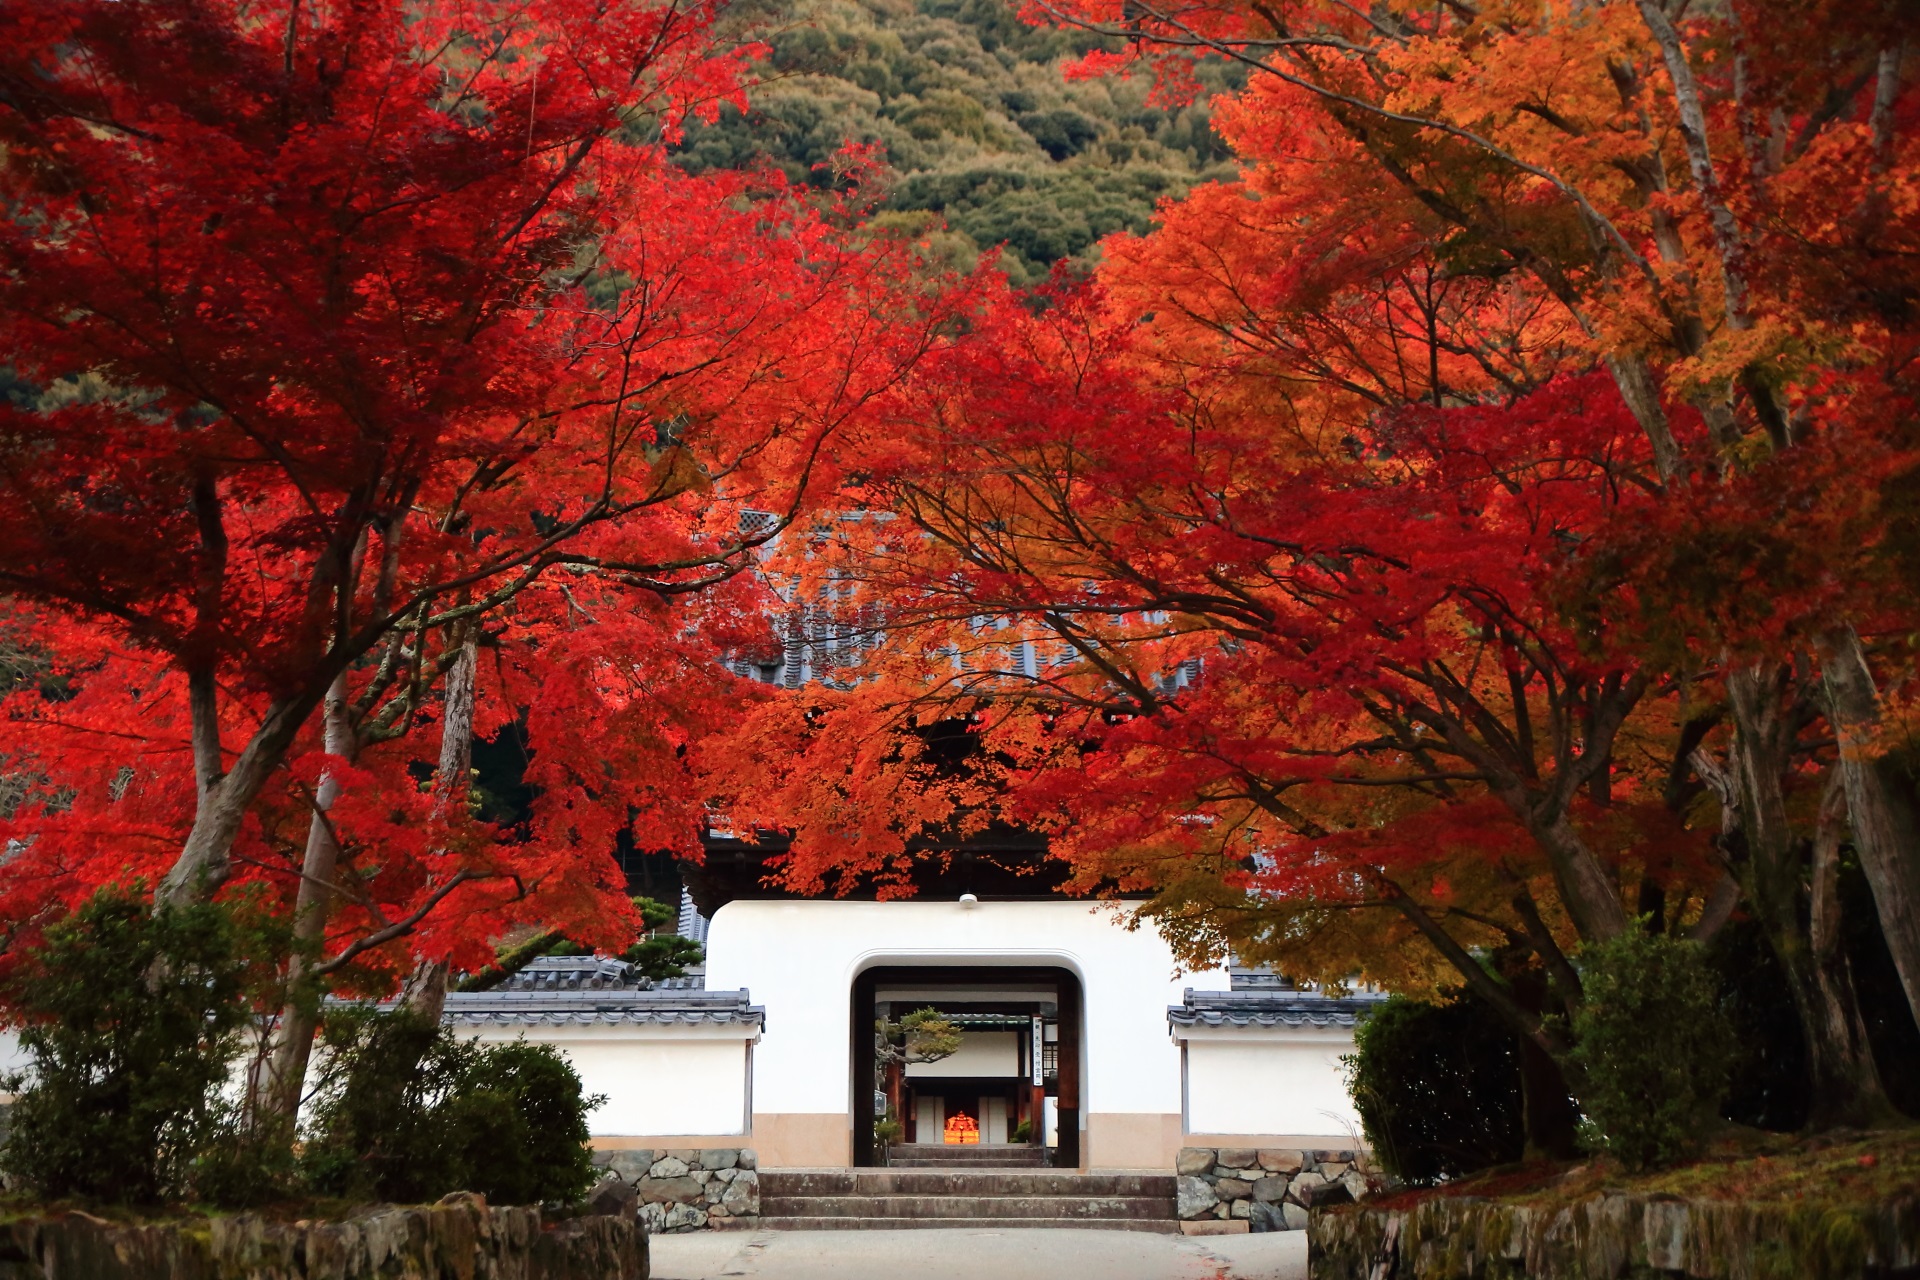 琴坂から眺めた興聖寺の龍宮門と圧巻の紅葉